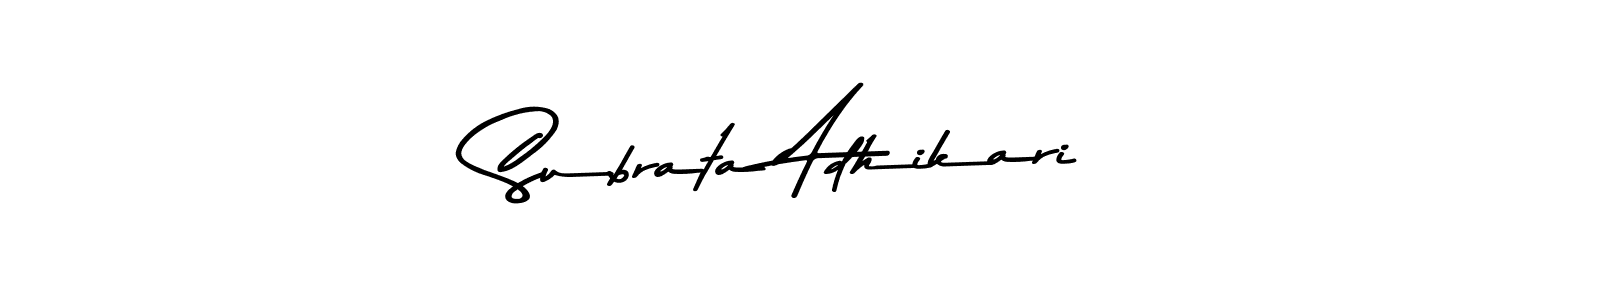 87+ Subrata Adhikari Name Signature Style Ideas | Fine E-Sign